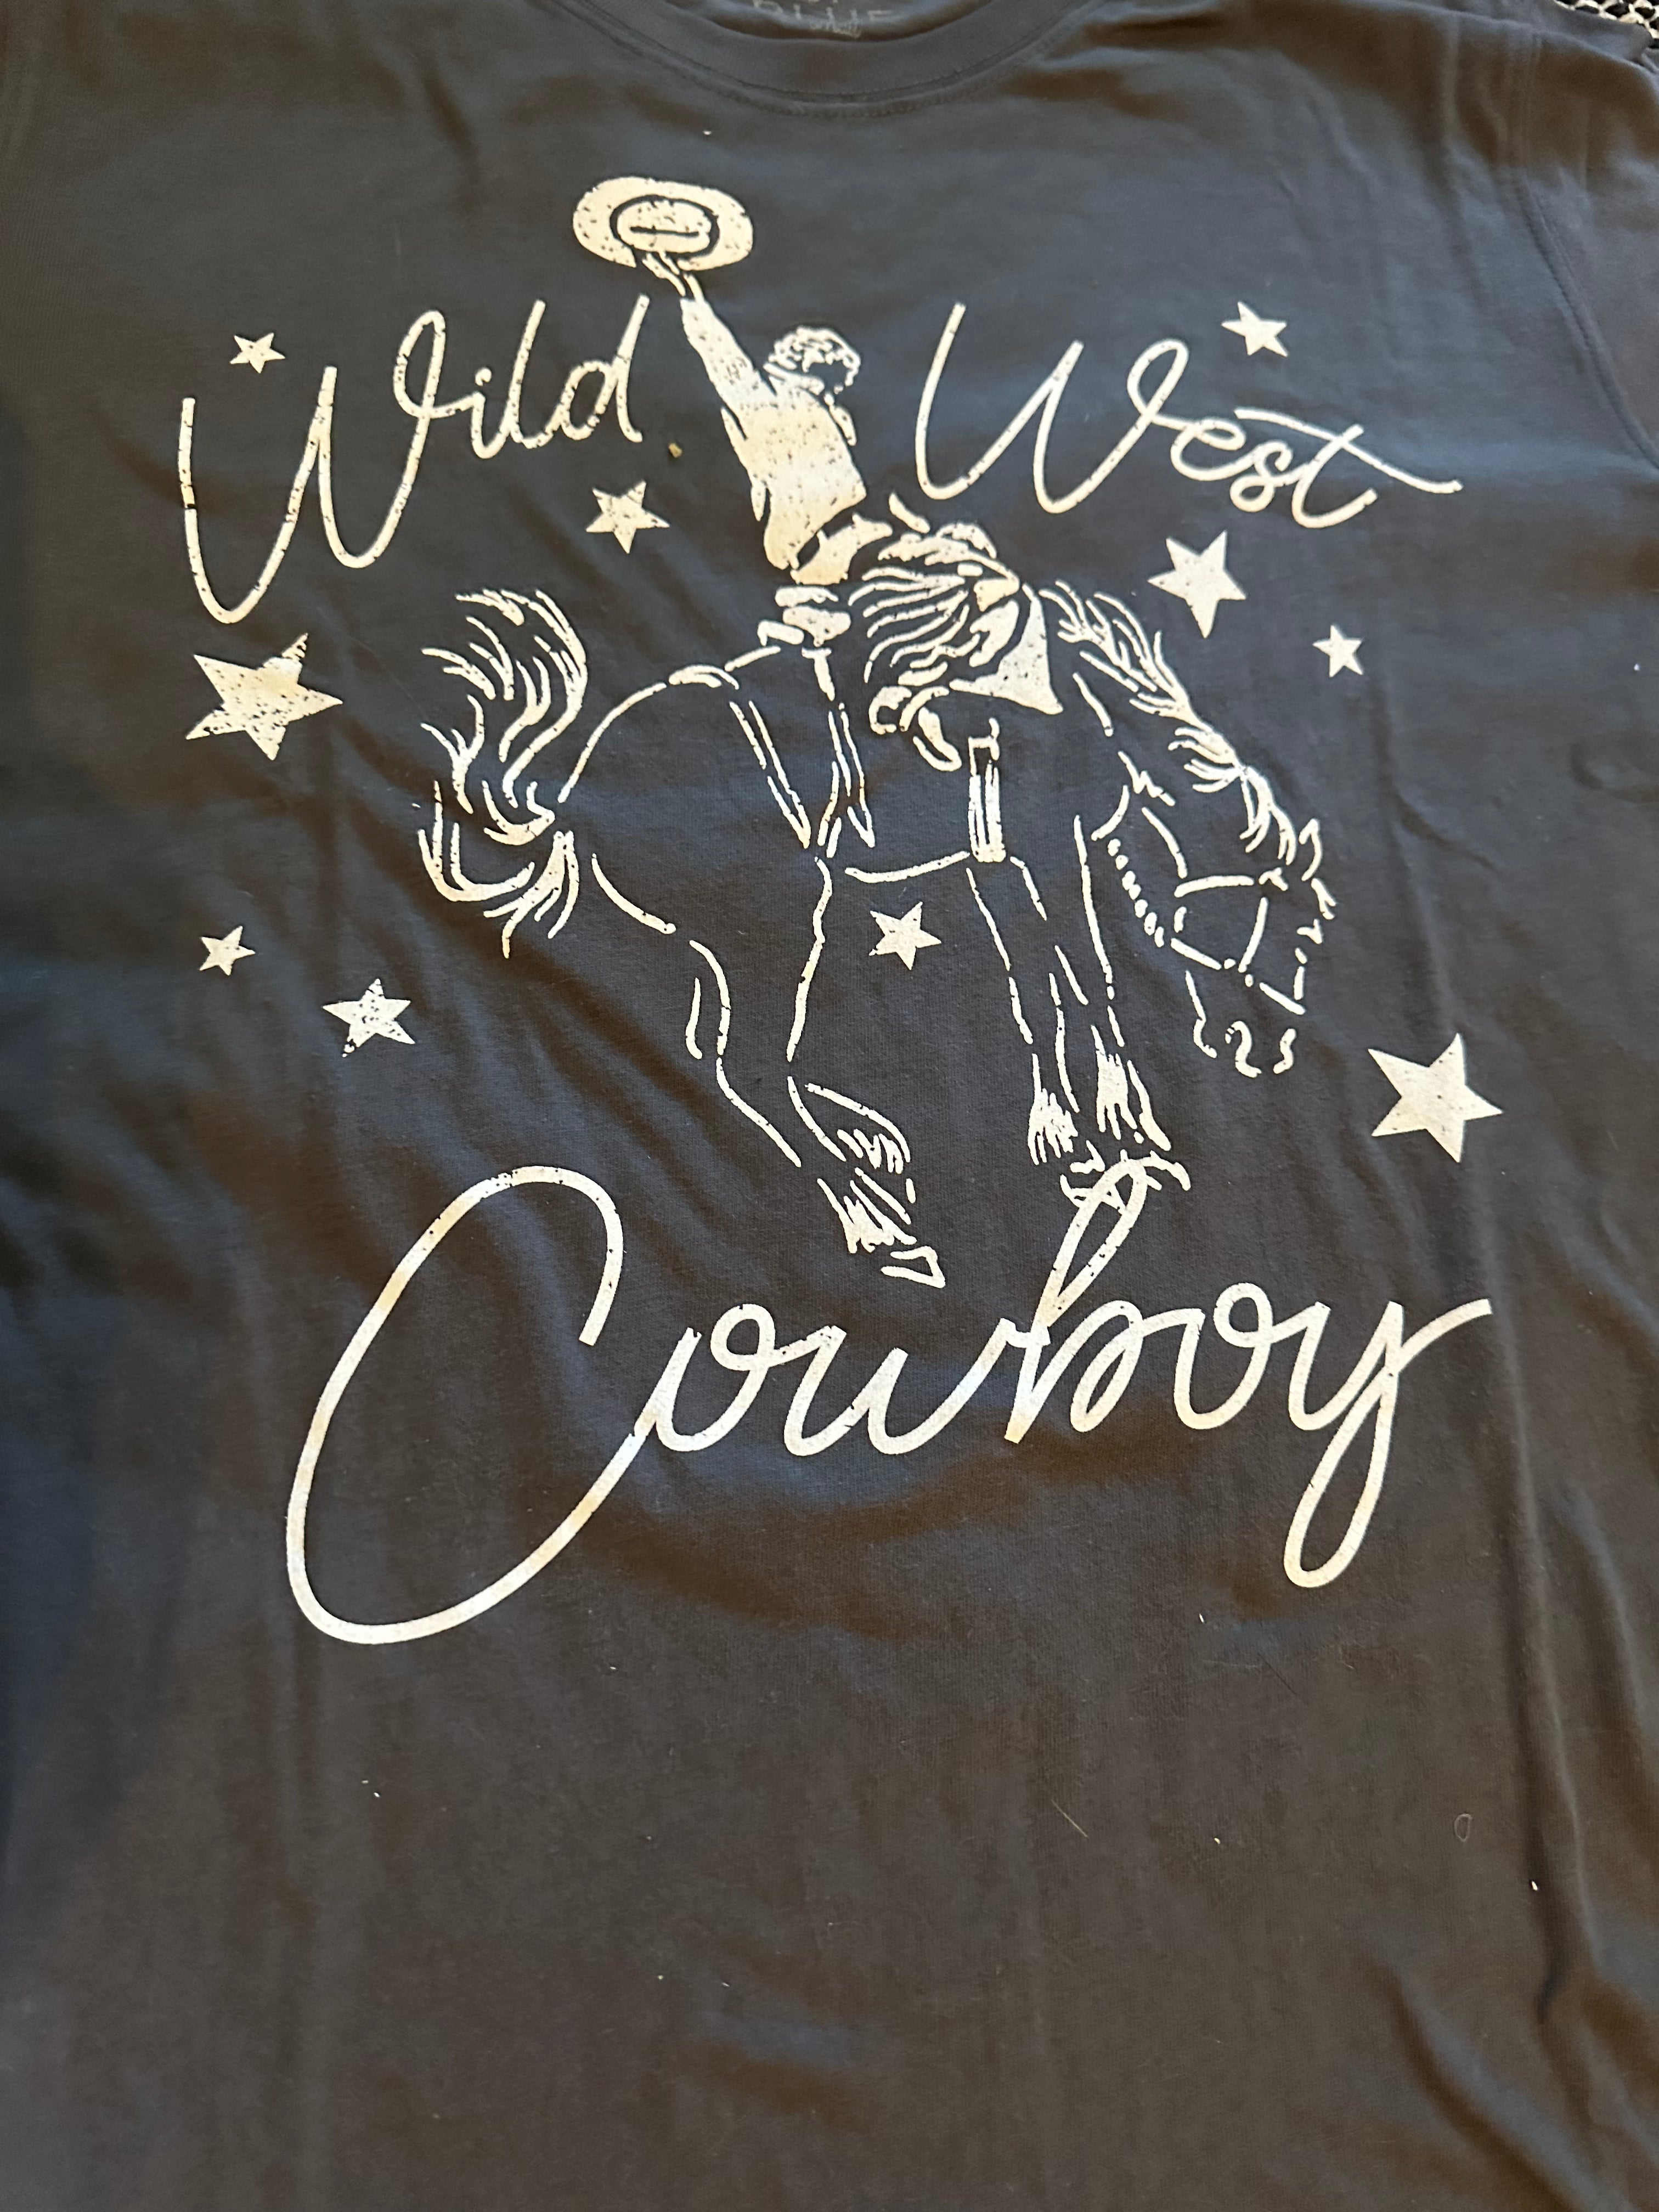 Wild West Cowboy Tee